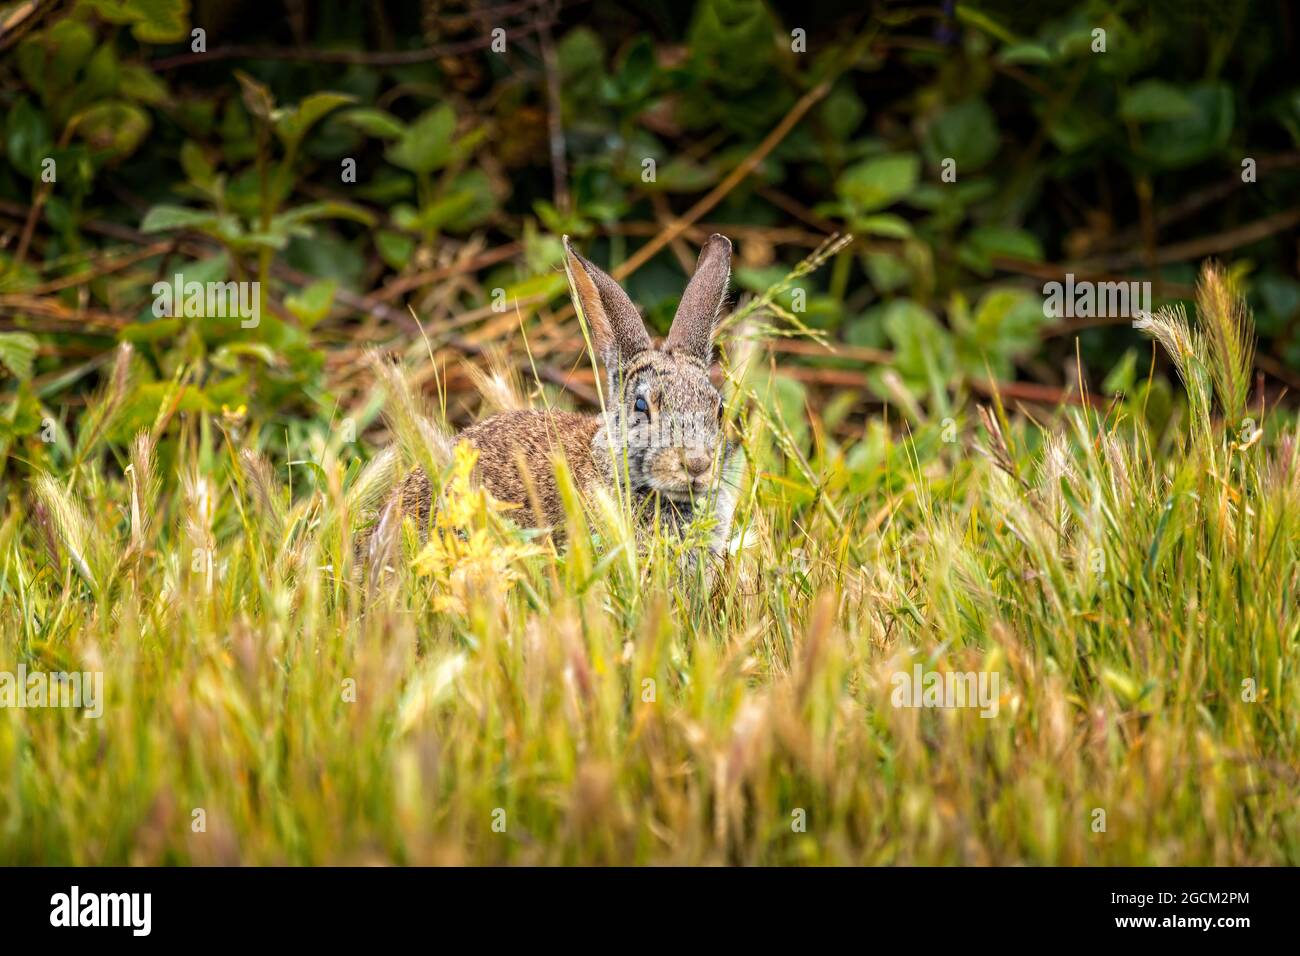 Peekaboo- coniglio di coda di cotone selvatico seduto nel gras Foto Stock